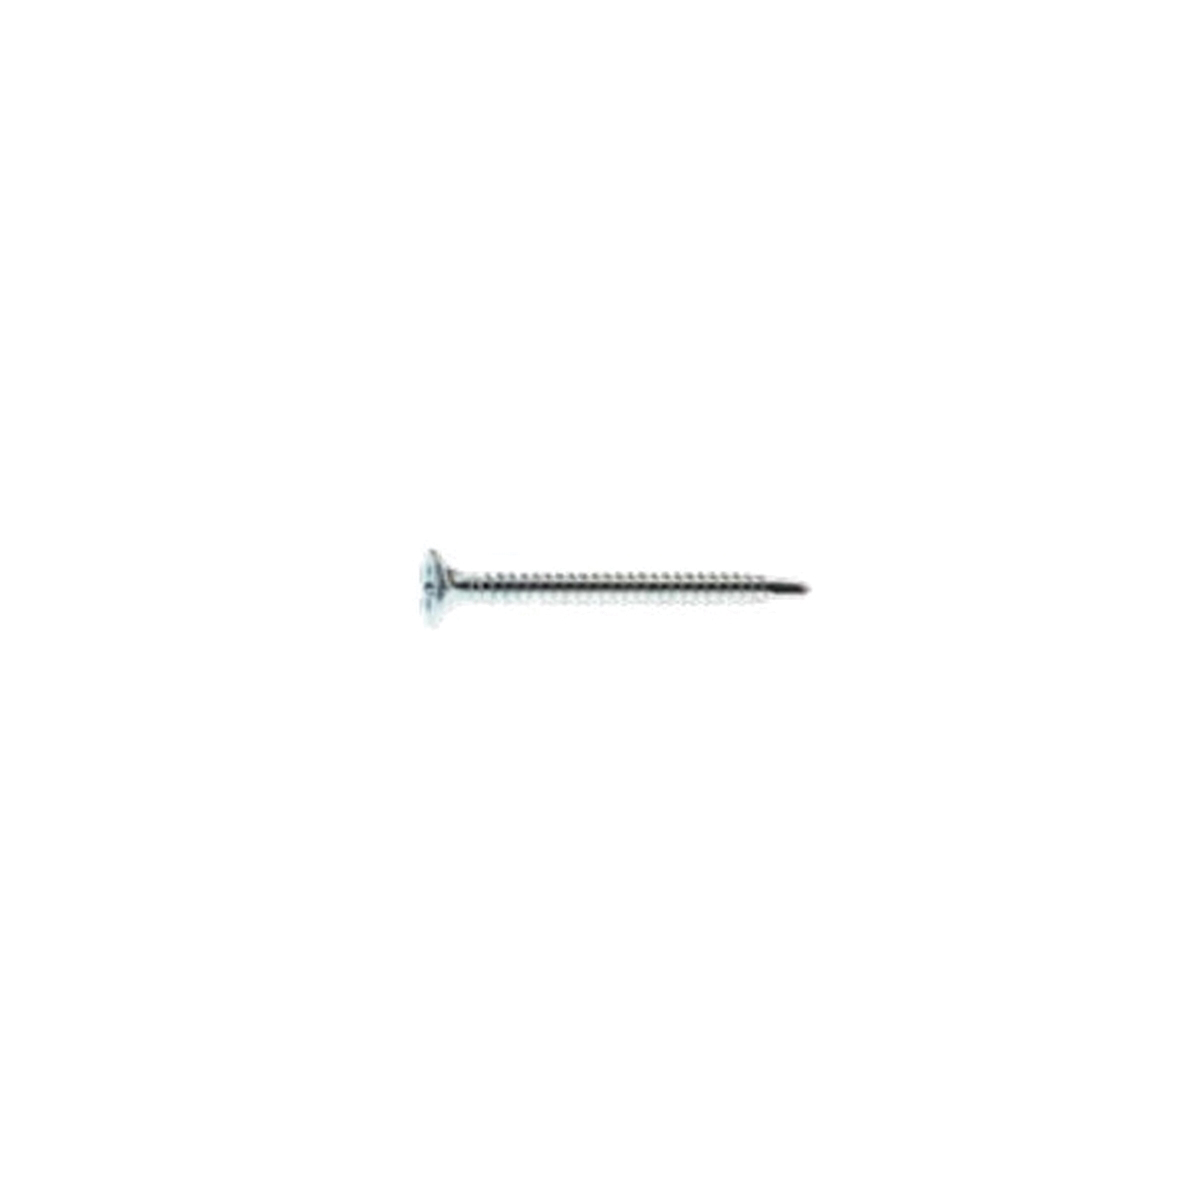 NSDZ1141 Screw, #6 Thread, 1-1/4 in L, Fine Thread, Bugle Head, Phillips Drive, Self-Drilling Point, Steel